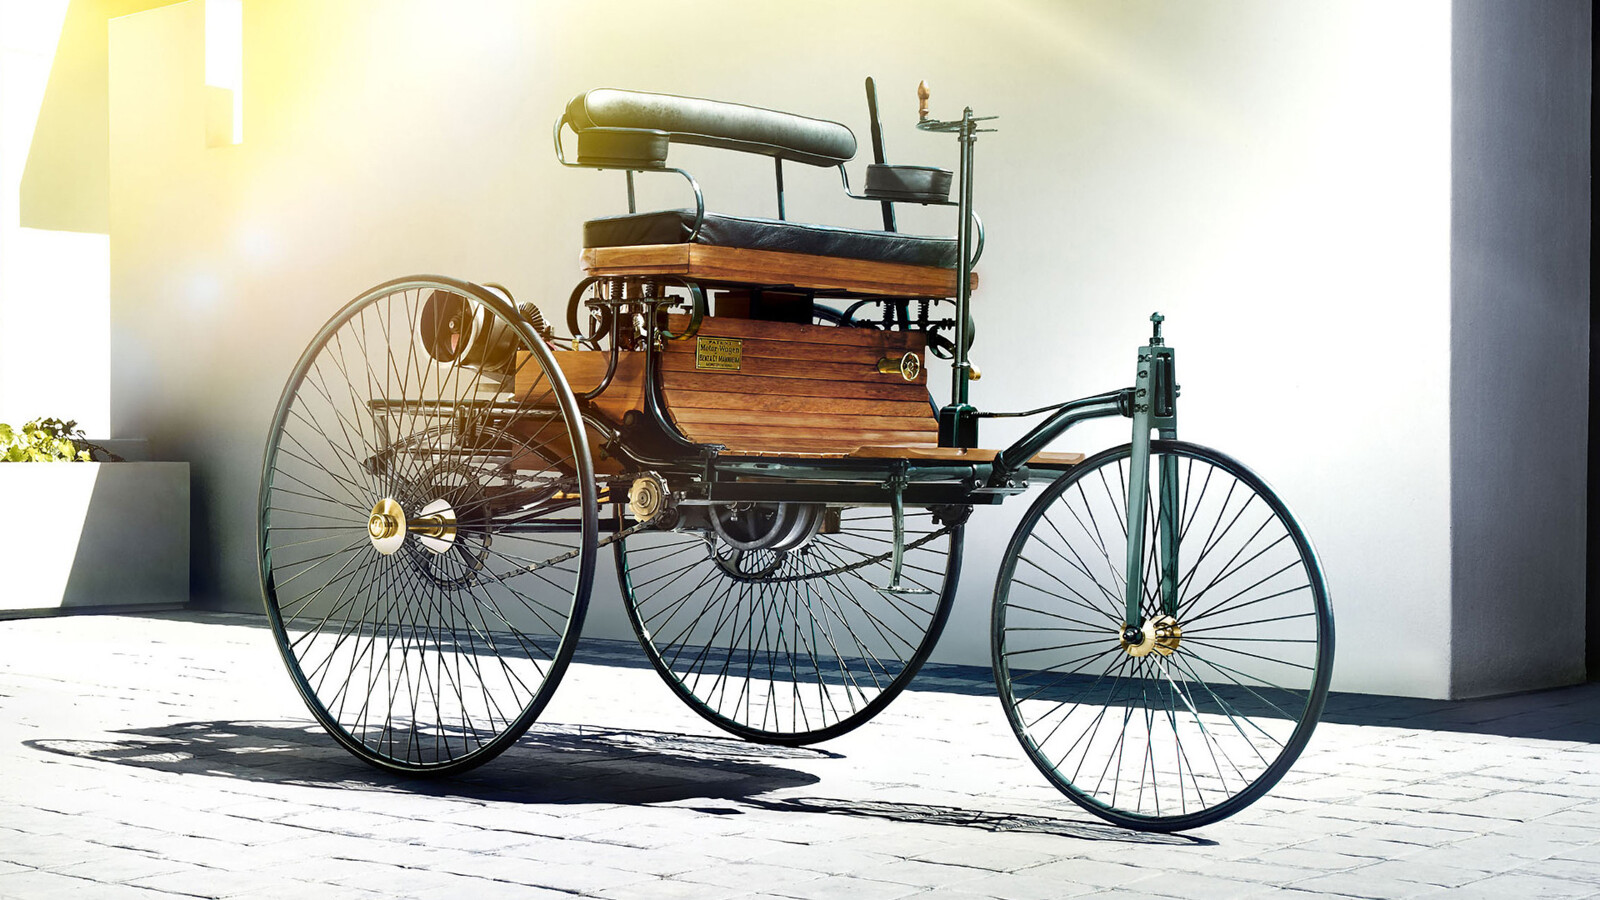 Первый автомобиль в истории. Машина Benz Patent-Motorwagen. Mercedes-Benz Motorwagen (1885 г.).